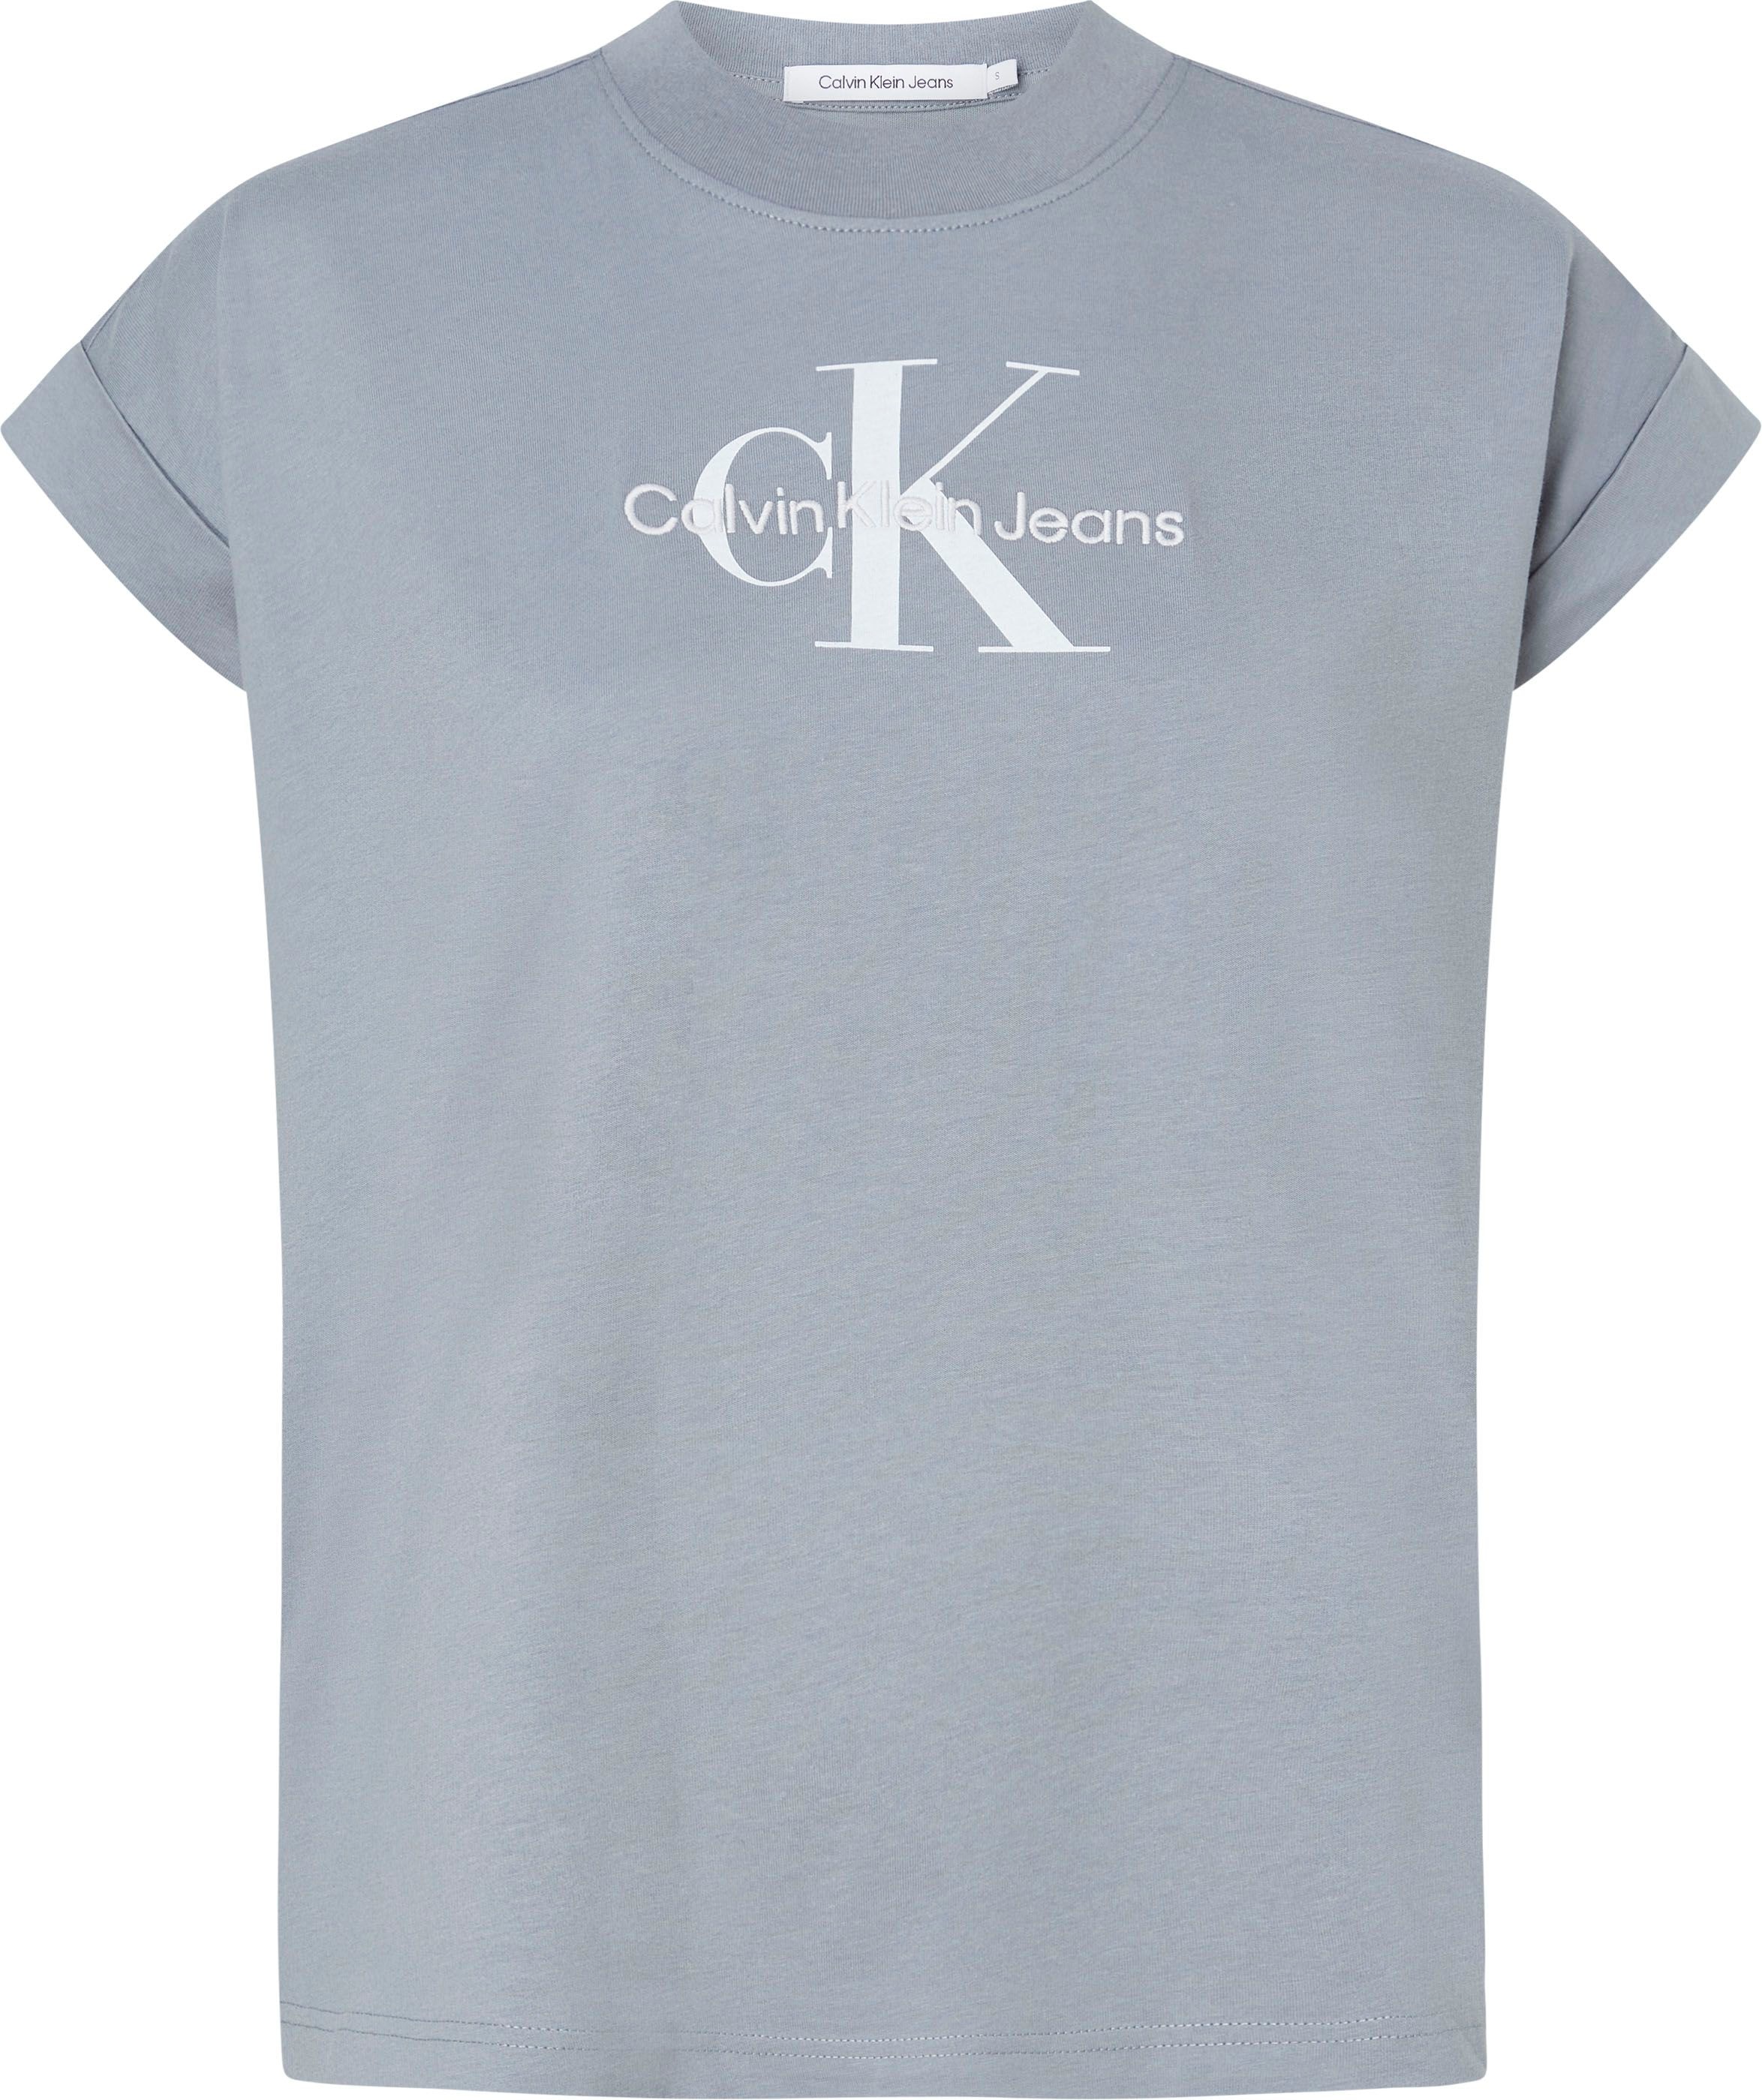 Jeans Calvin shoppen T-Shirt, an Klein breitem den Ärmeln mit Umschlagbund